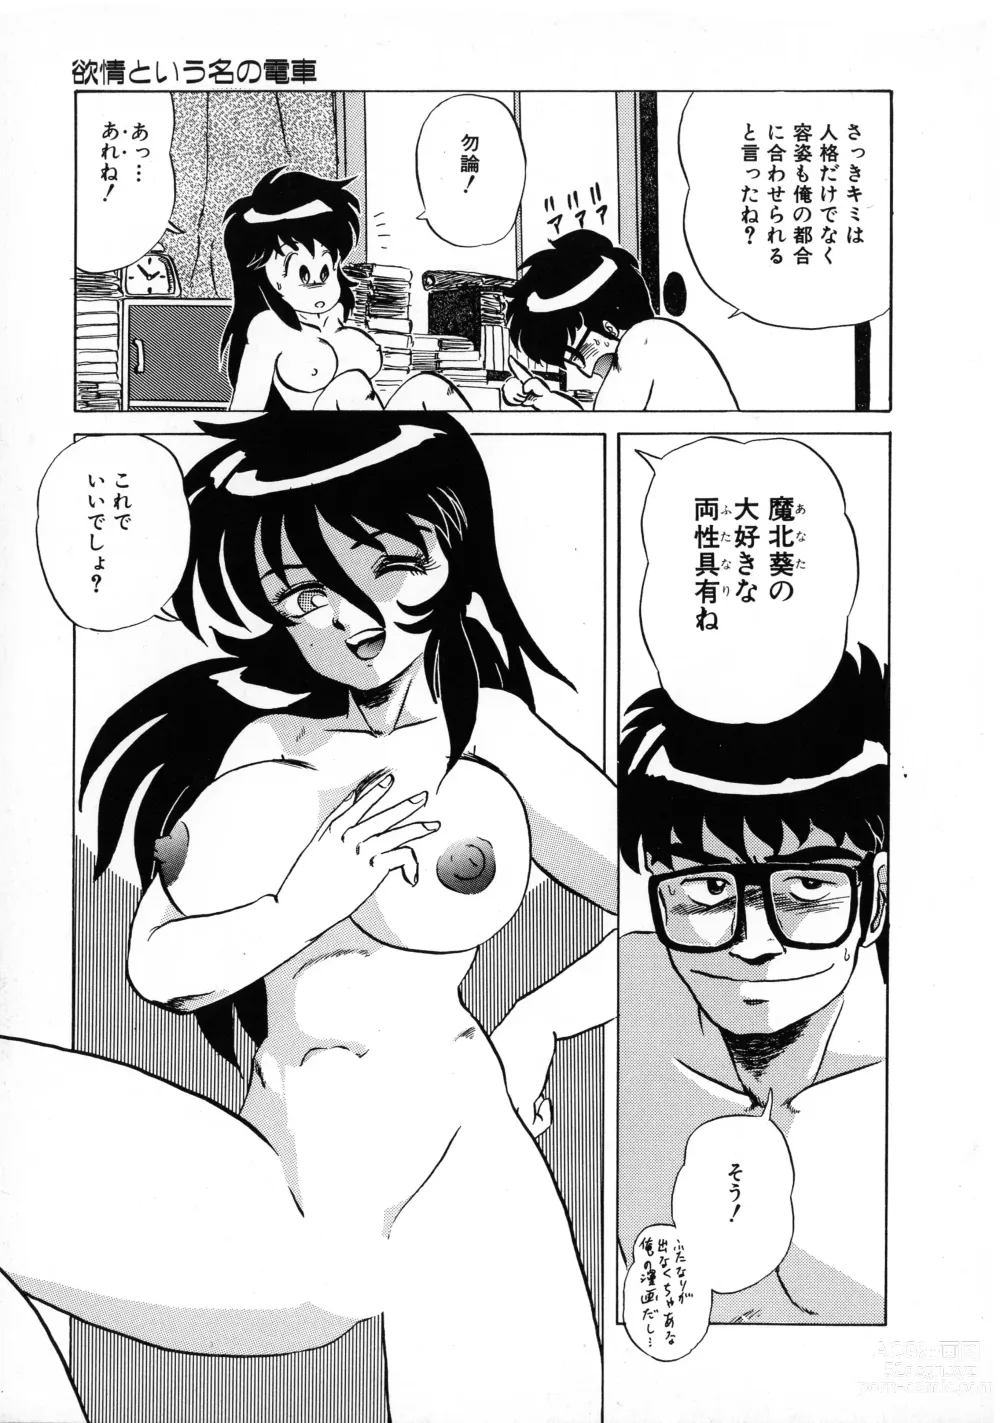 Page 154 of manga Akai Miwaku